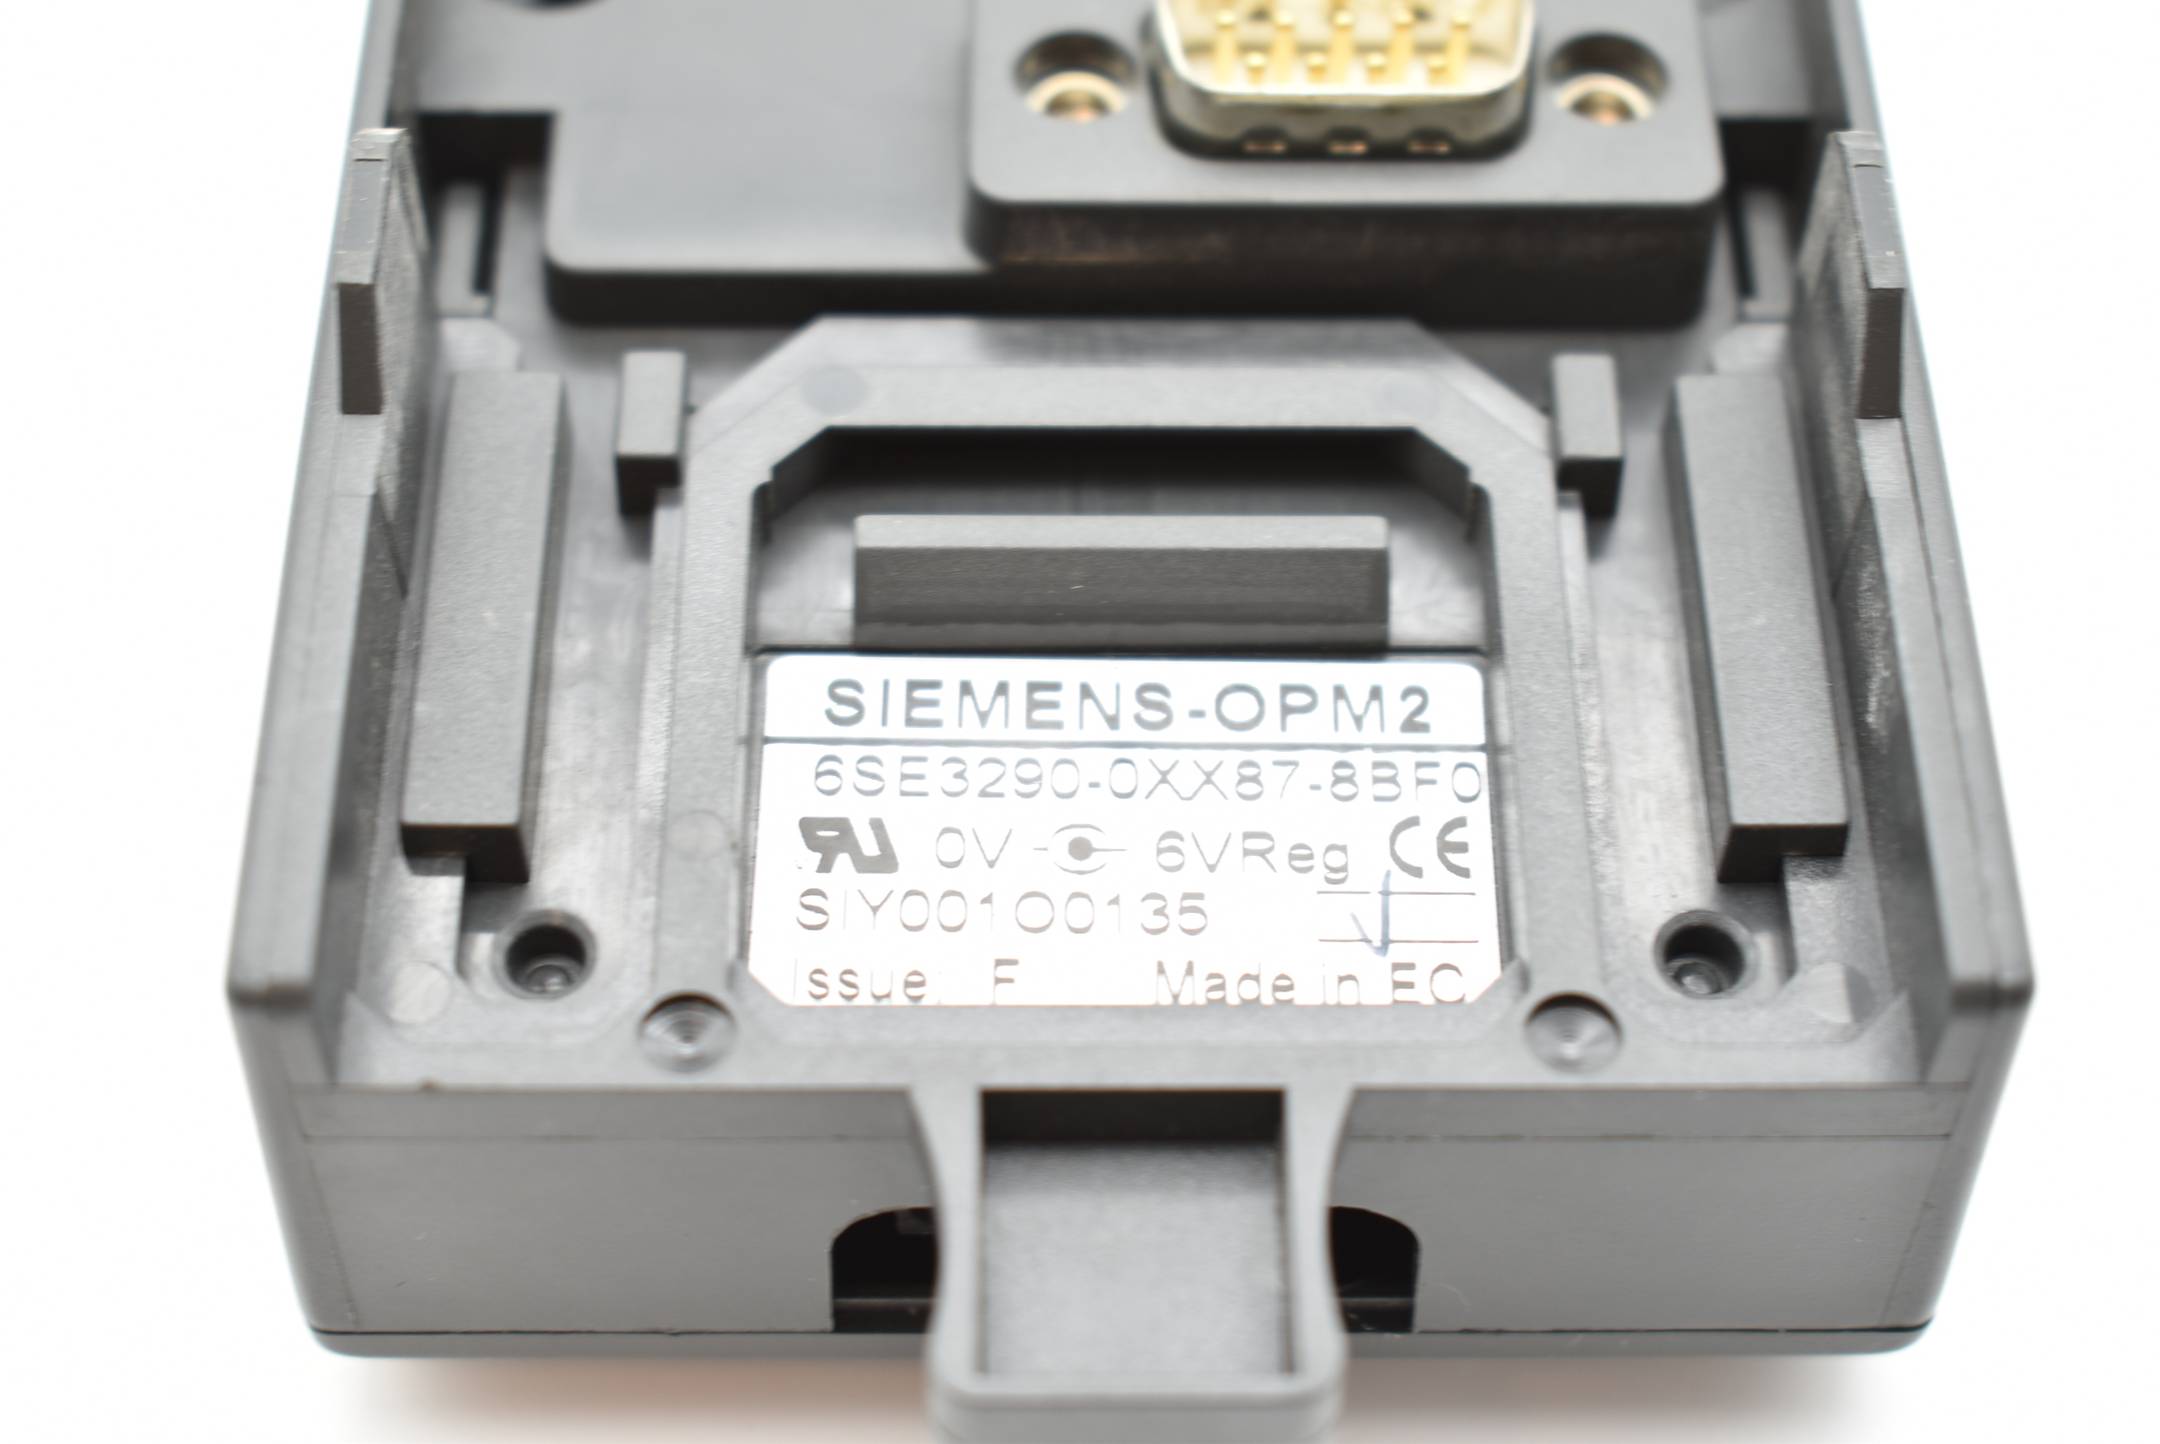 Siemens OPM2 6SE3290-0XX87-8BF0 ( 6SE3 290-0XX87-8BF0 ) Issue F